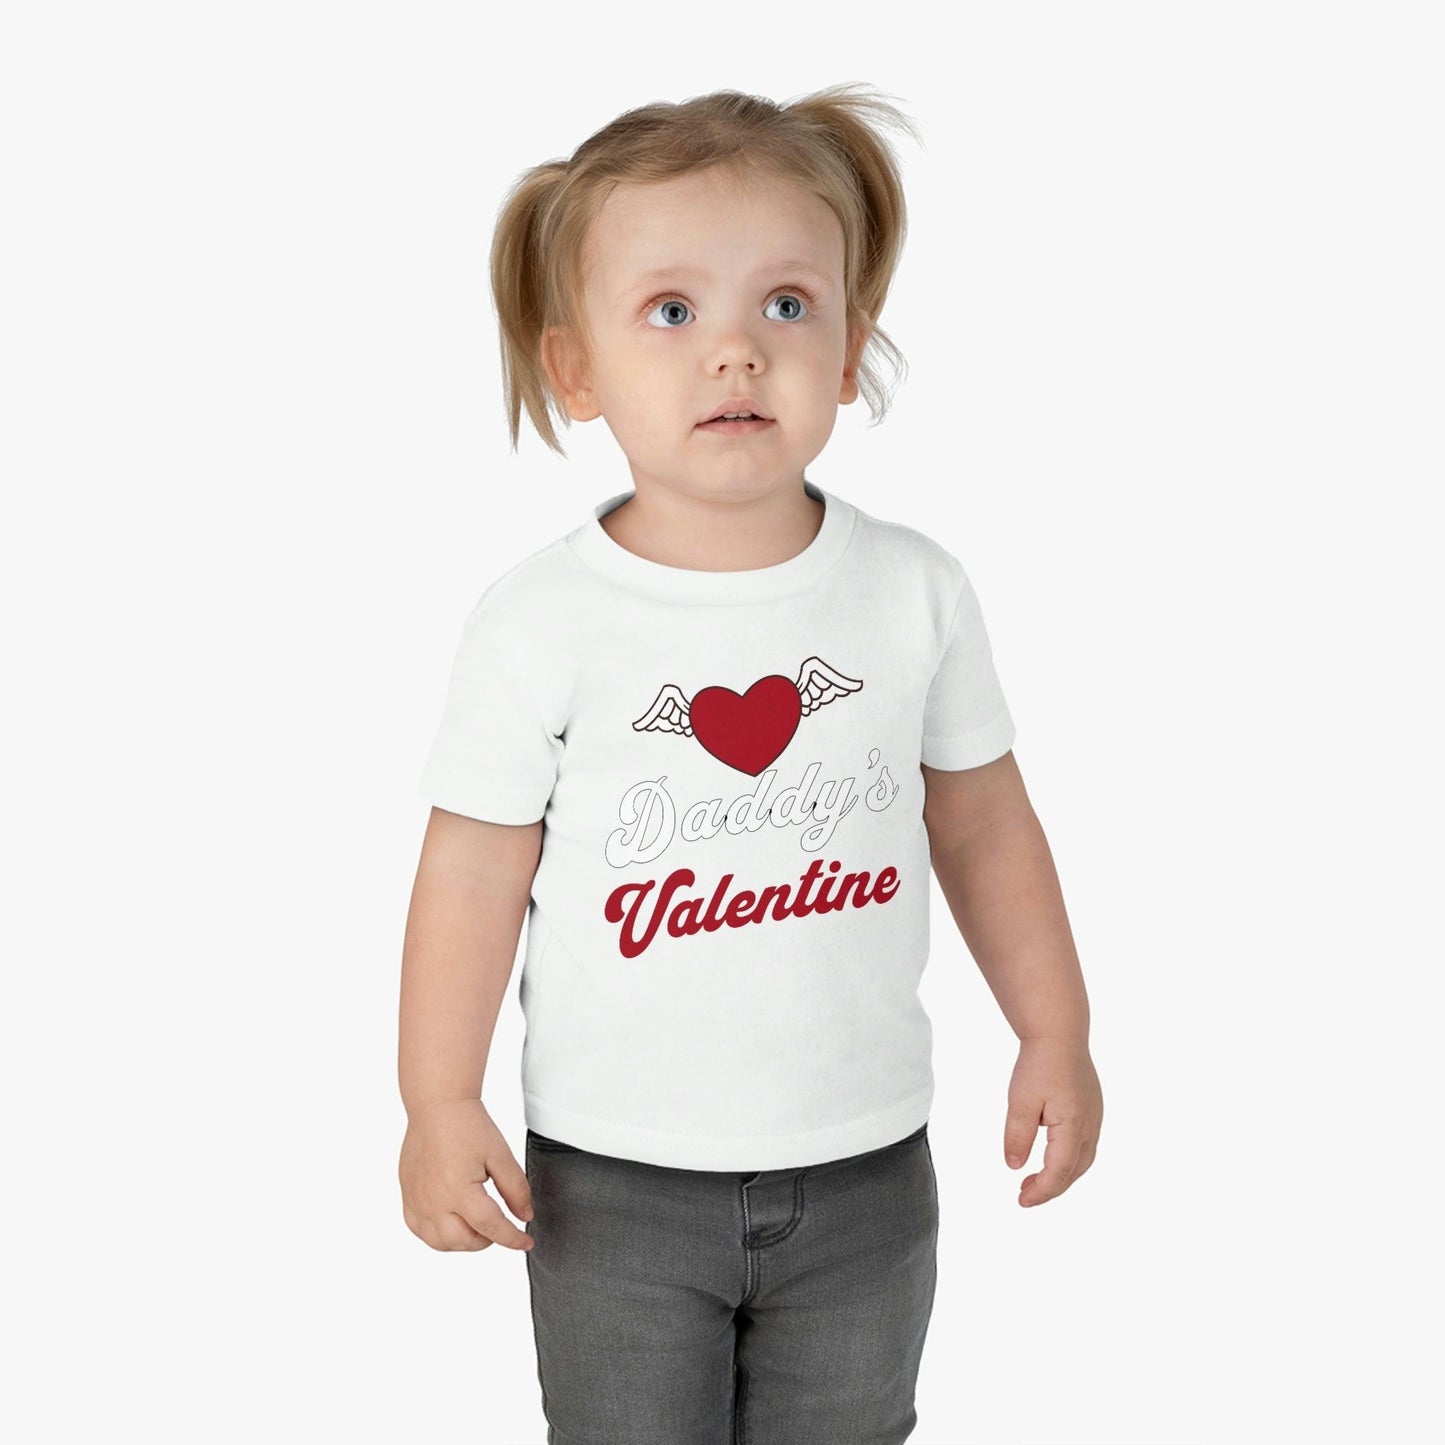 Kids Valentine day shirt - Kids Valentine Gift